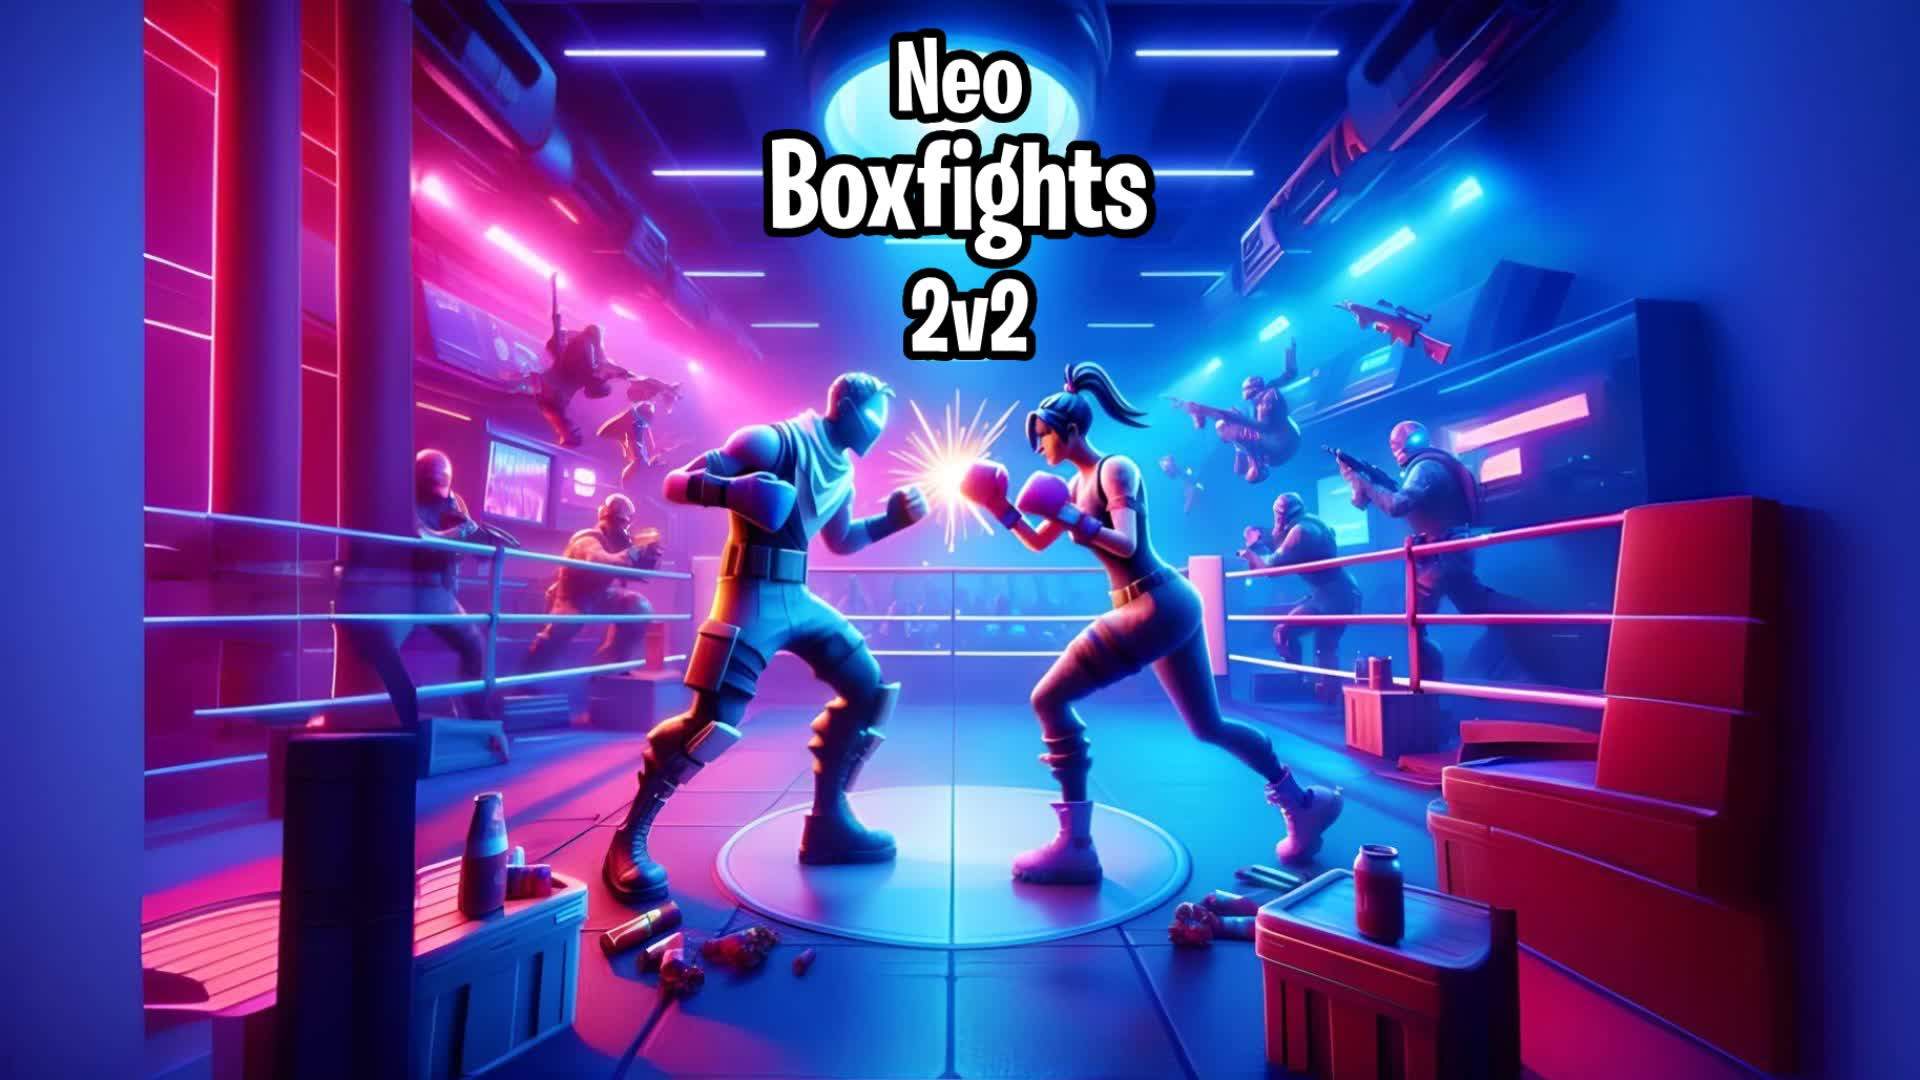 Neo 2v2 Boxfights